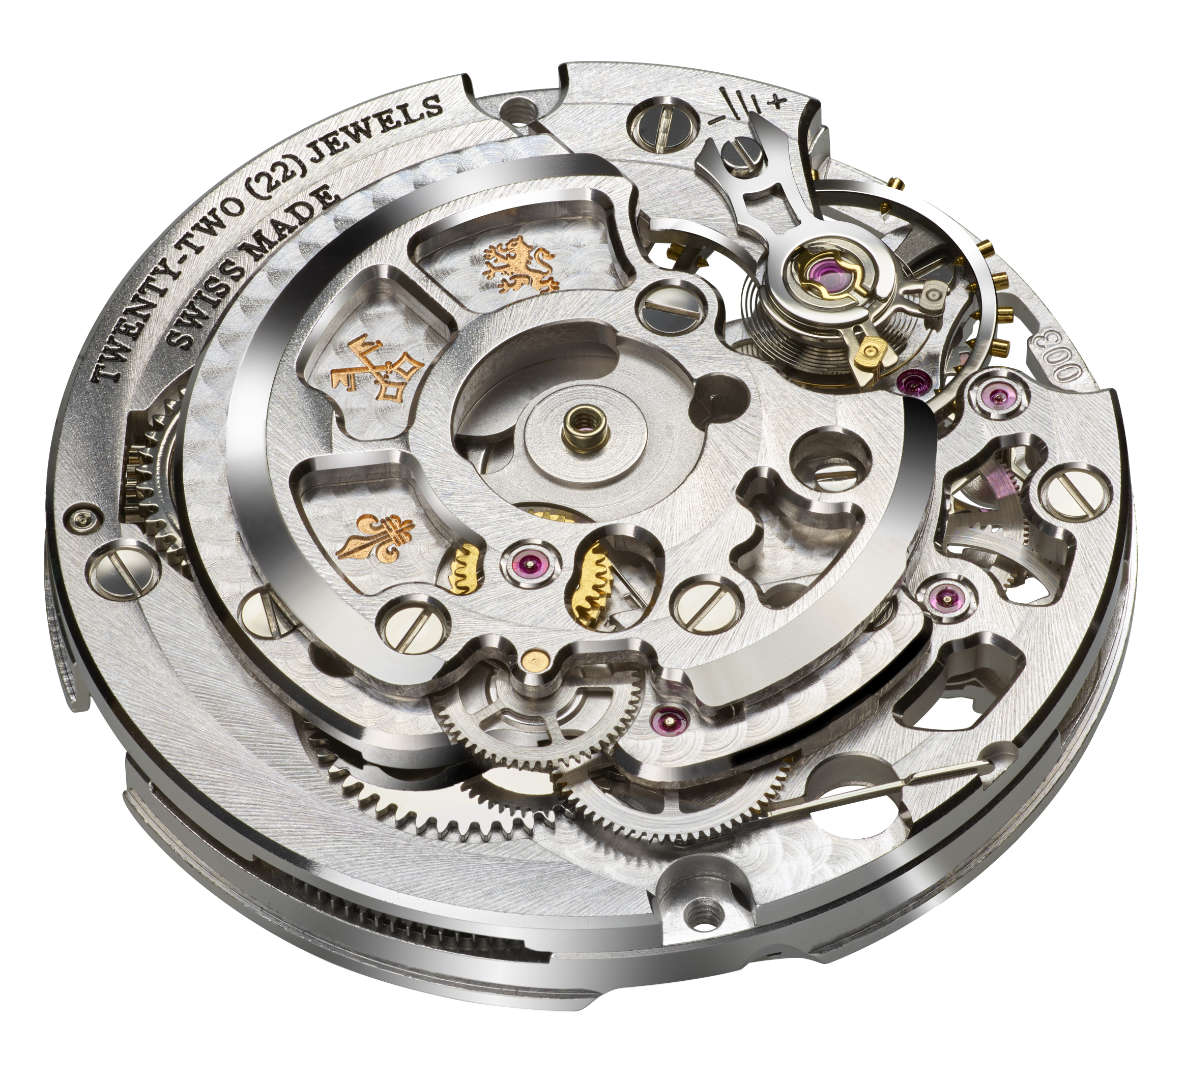 Louis Moinet Mars 43.20 mm Watch in Copper Dial